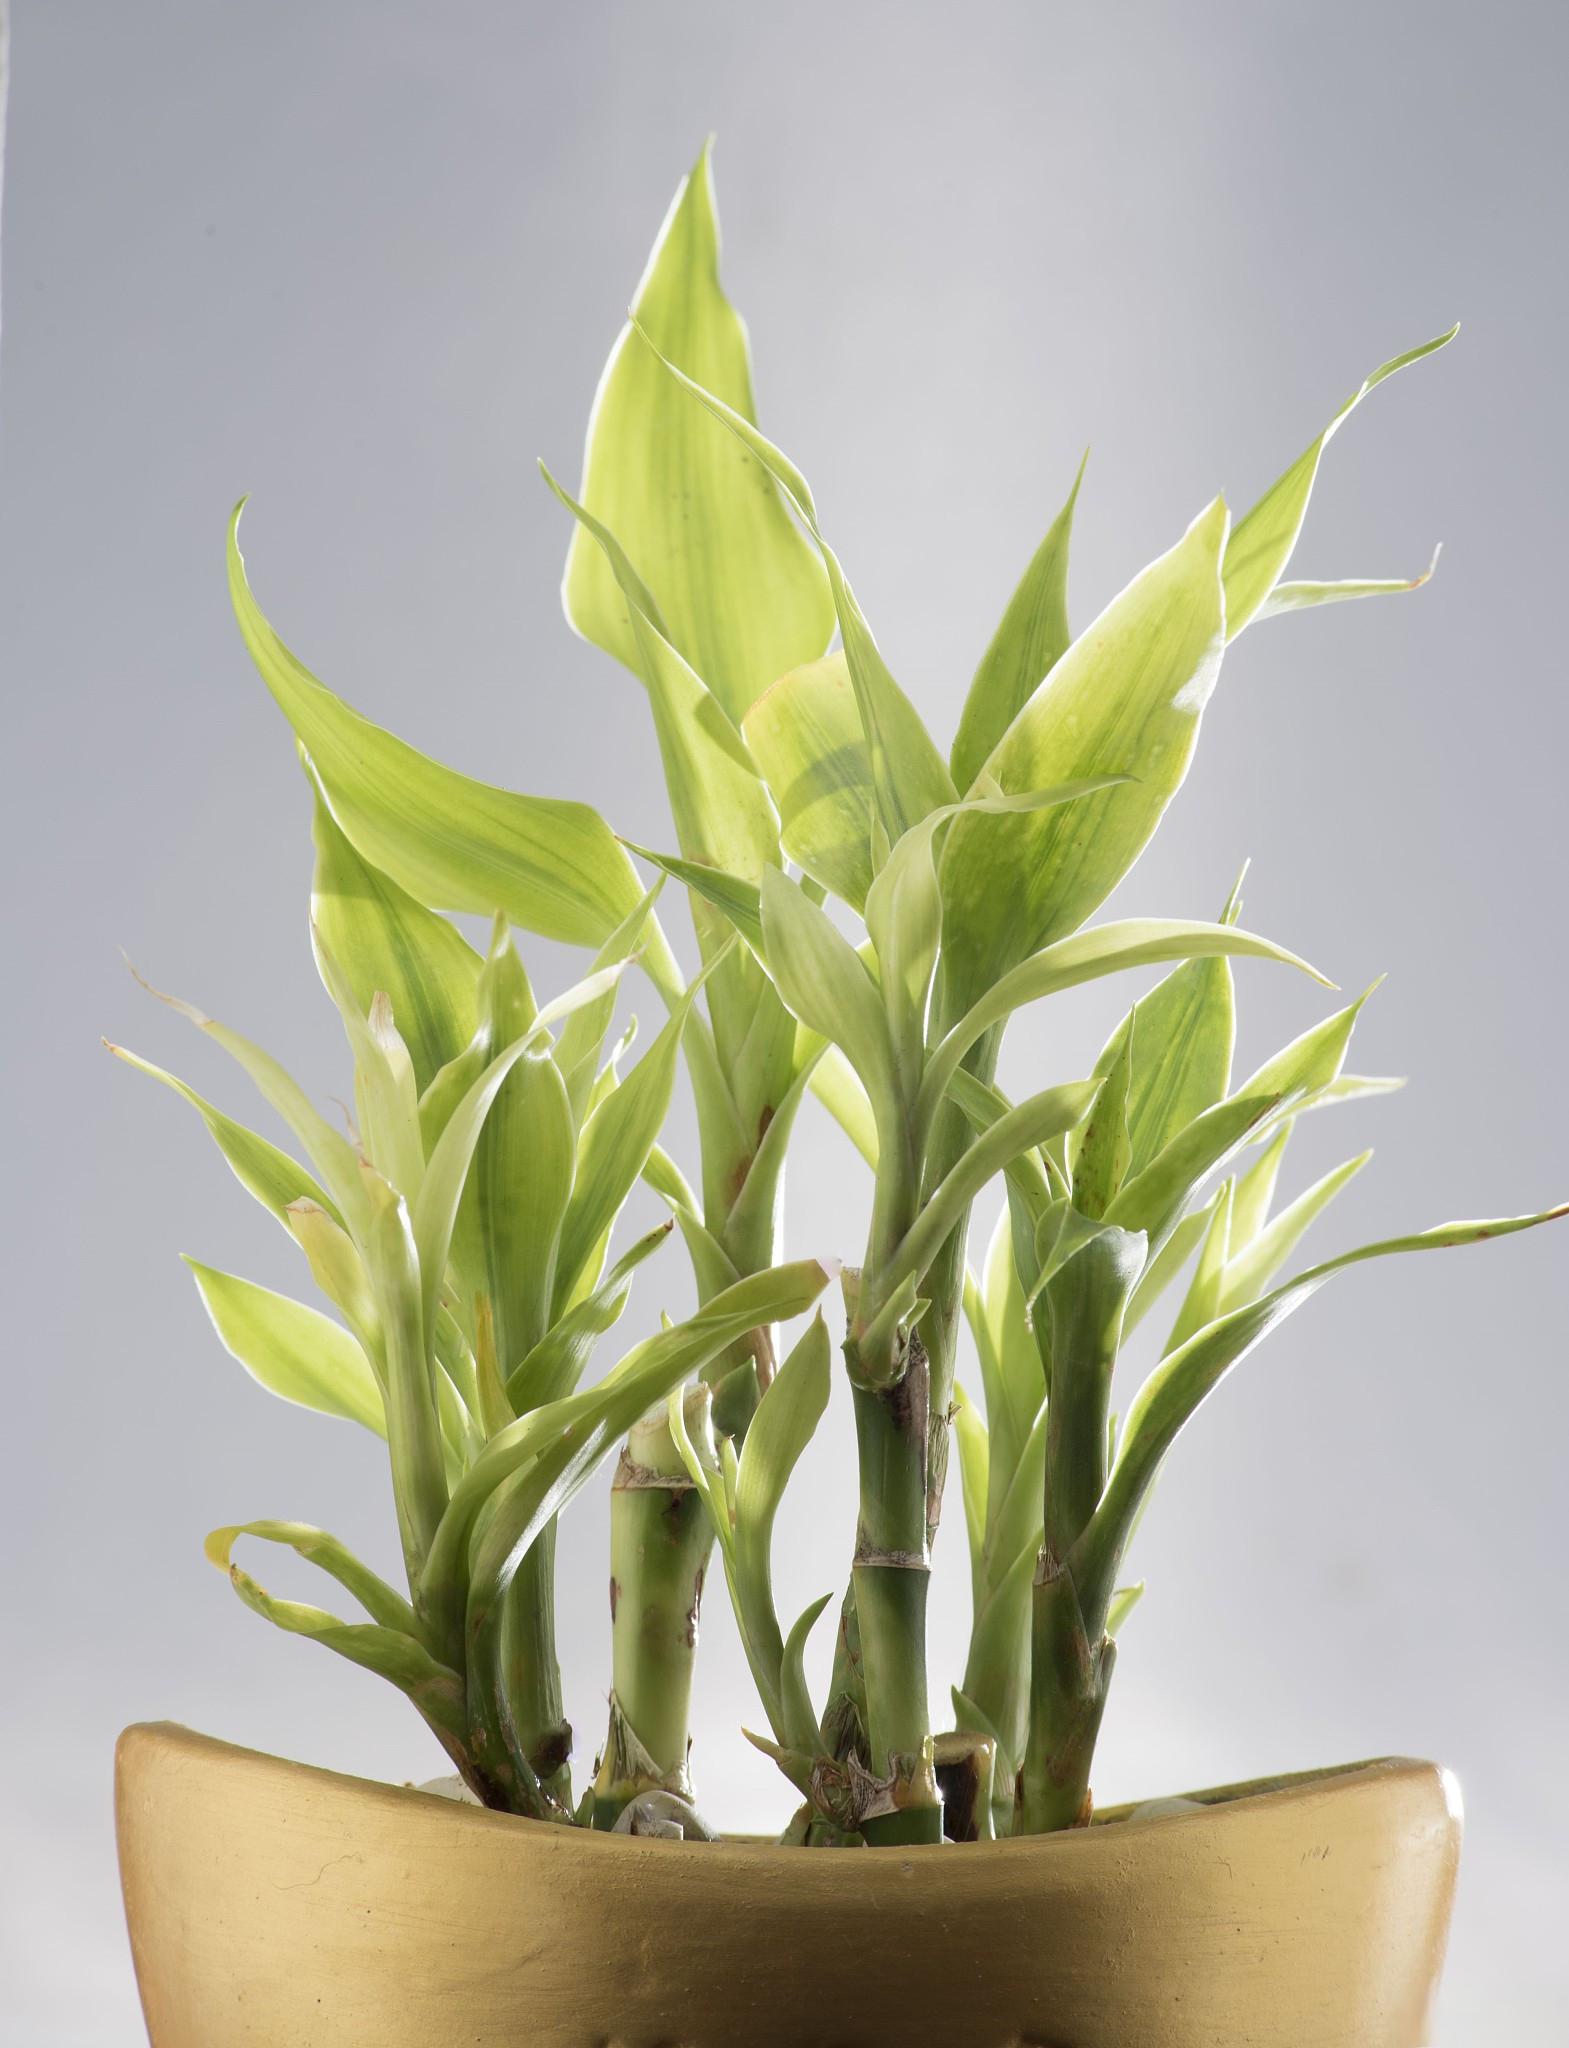 富贵竹是一种常见的水培植物,因其具有美好的寓意和优雅的外观,常常